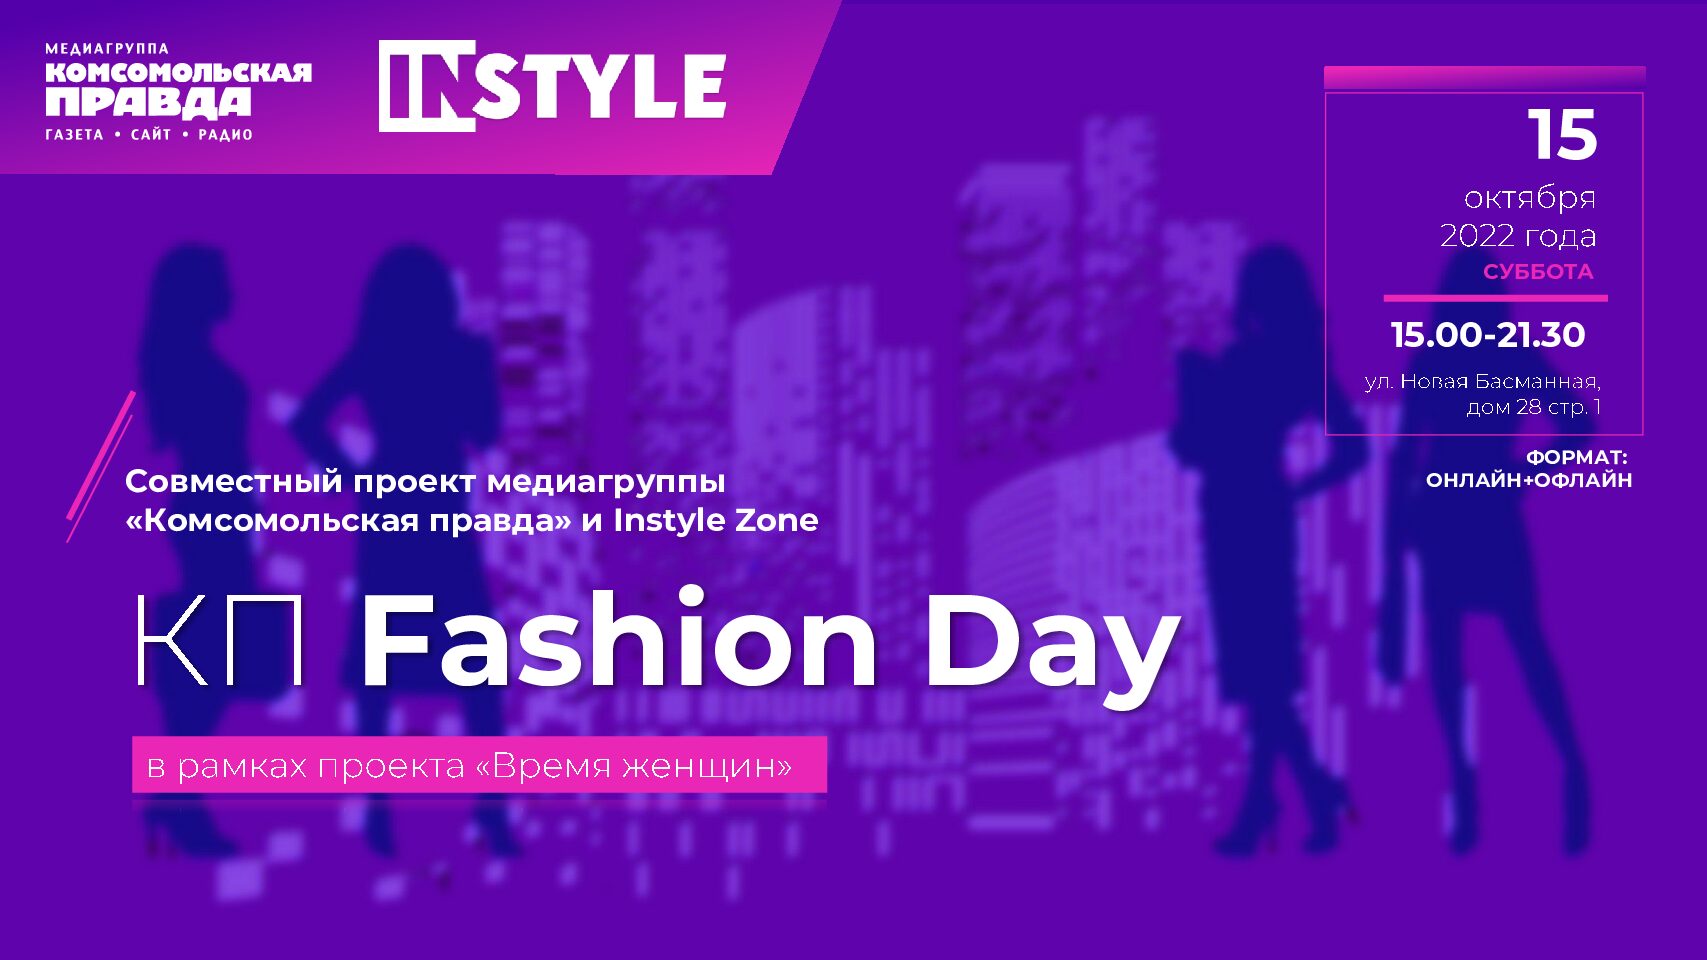 КП Fashion day, 15 октября 2022